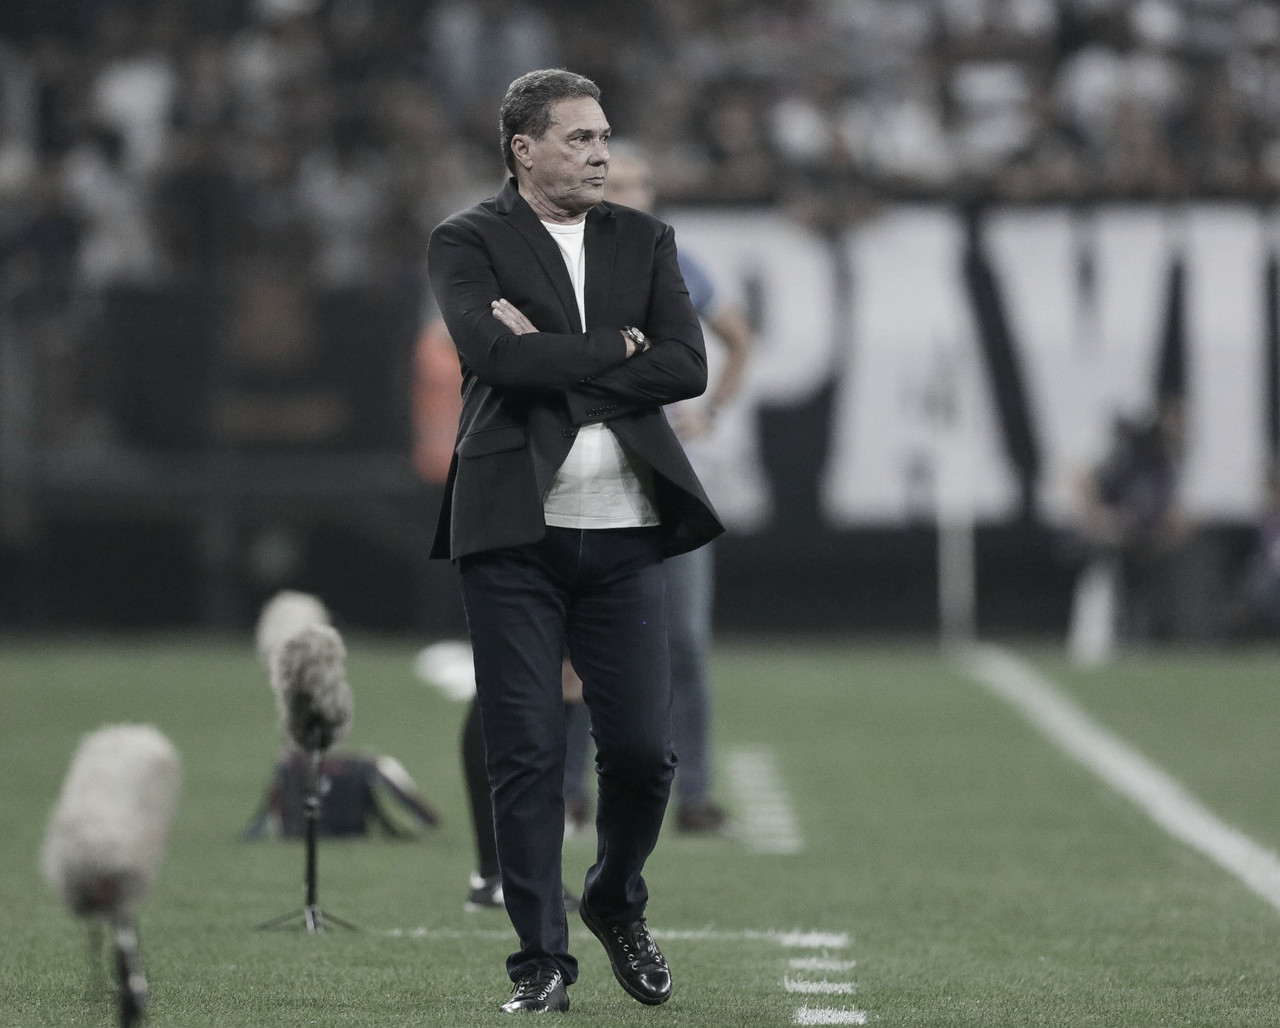 Luxemburgo vê evolução na equipe do Corinthians diante do Fortaleza: "Caminhando bem"